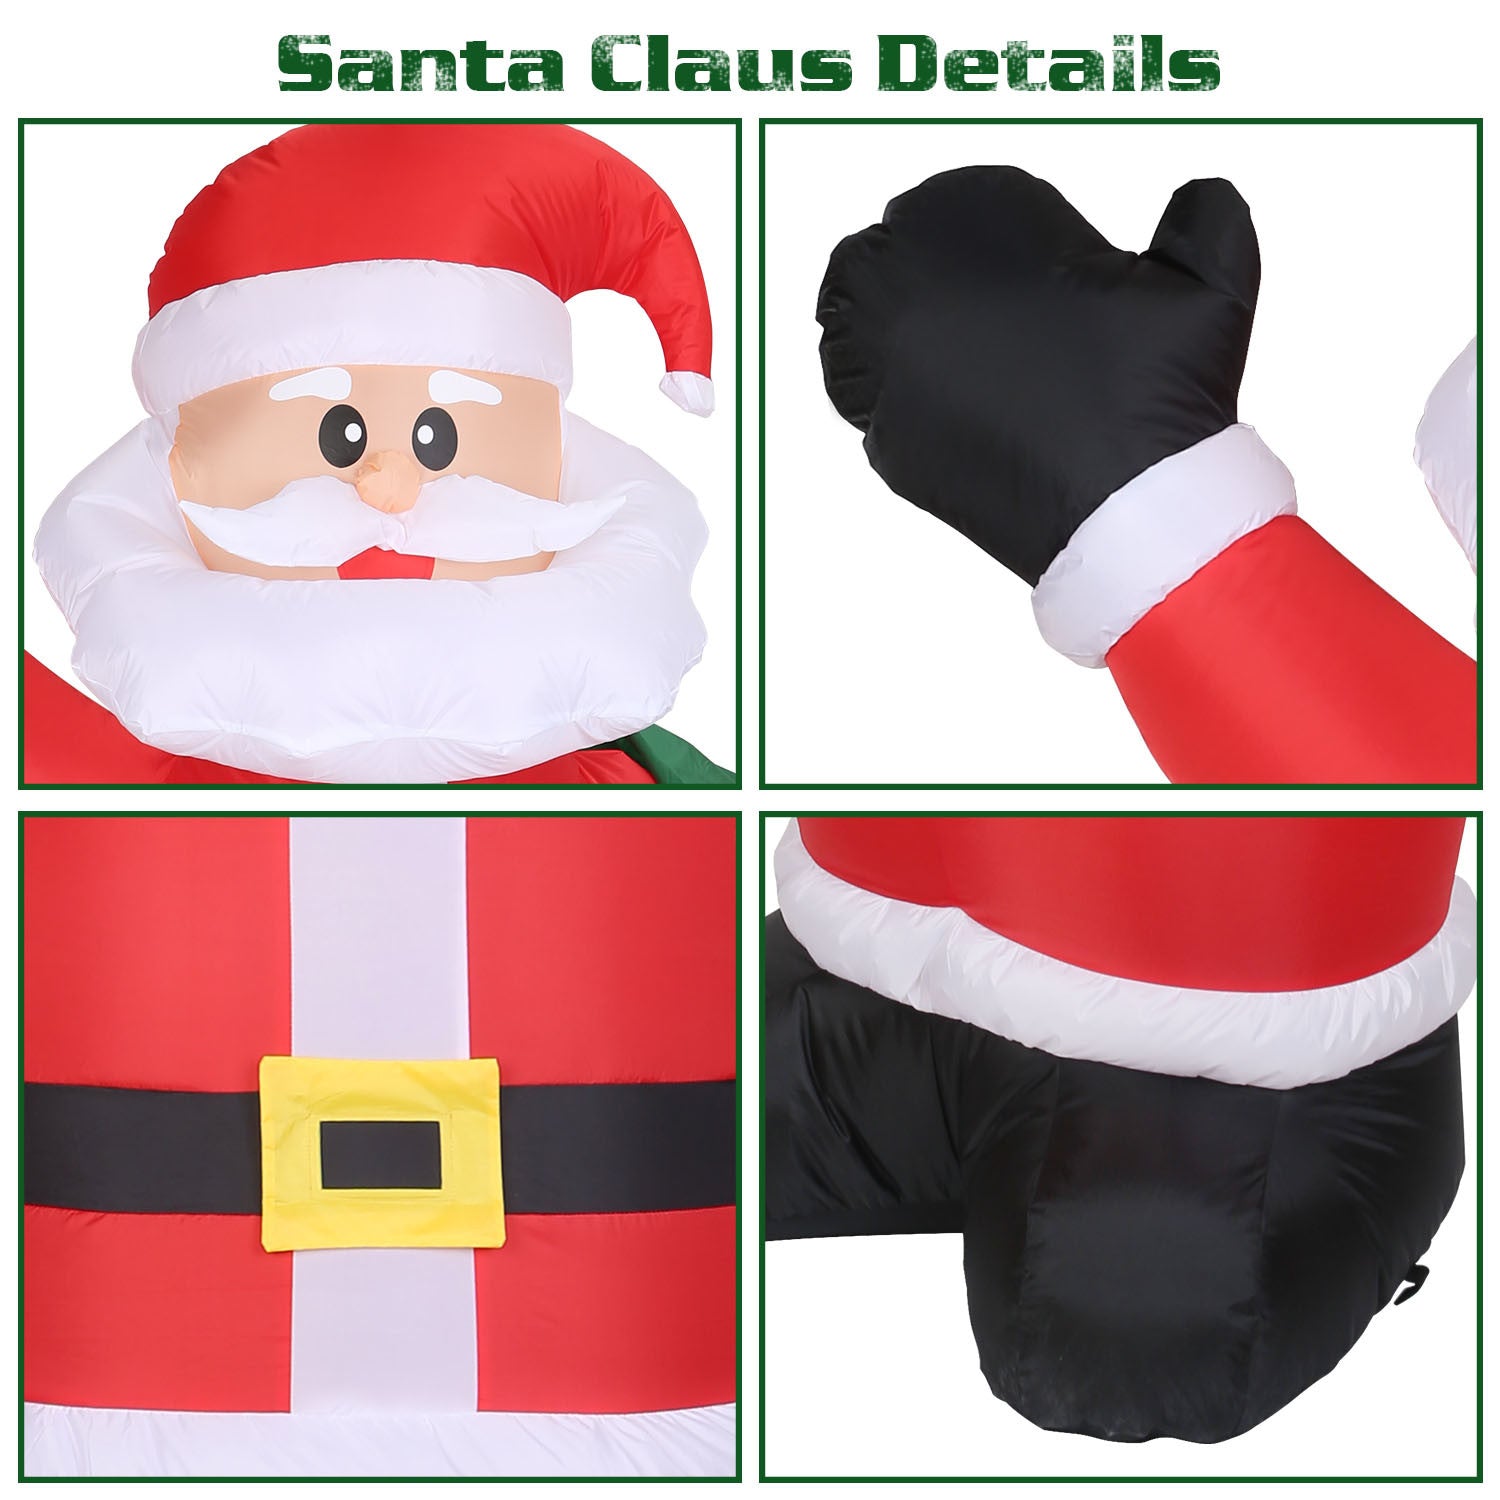 6 Foot Christmas Santa, Inflatable Santa Claus